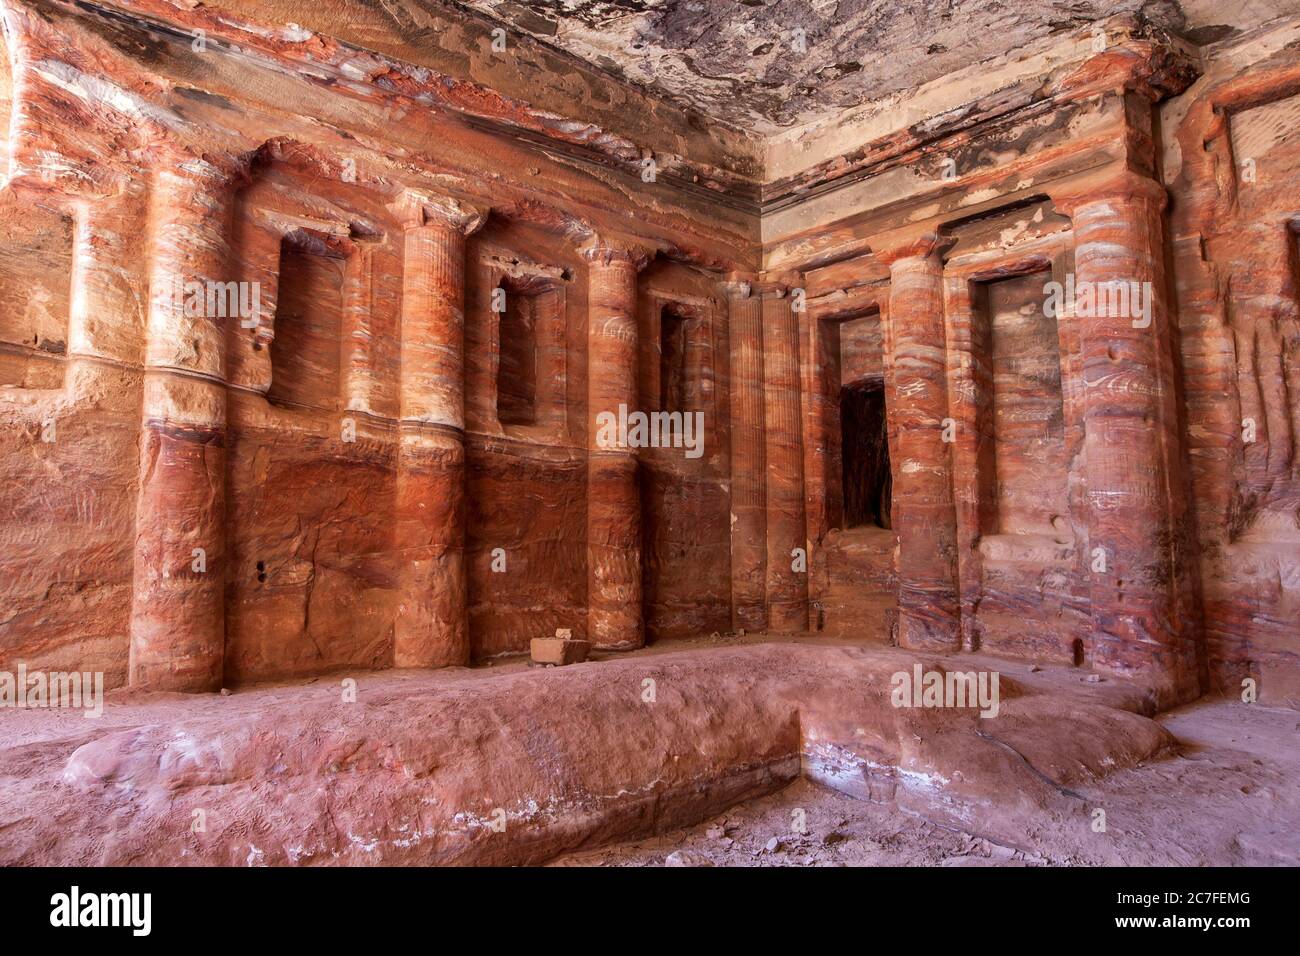 El interior del triclinium coloreado que data del 200 AC al 200 AD. Está ubicado en la ruta procesional de Wadi al Farasa en Petra, Jordania. Foto de stock